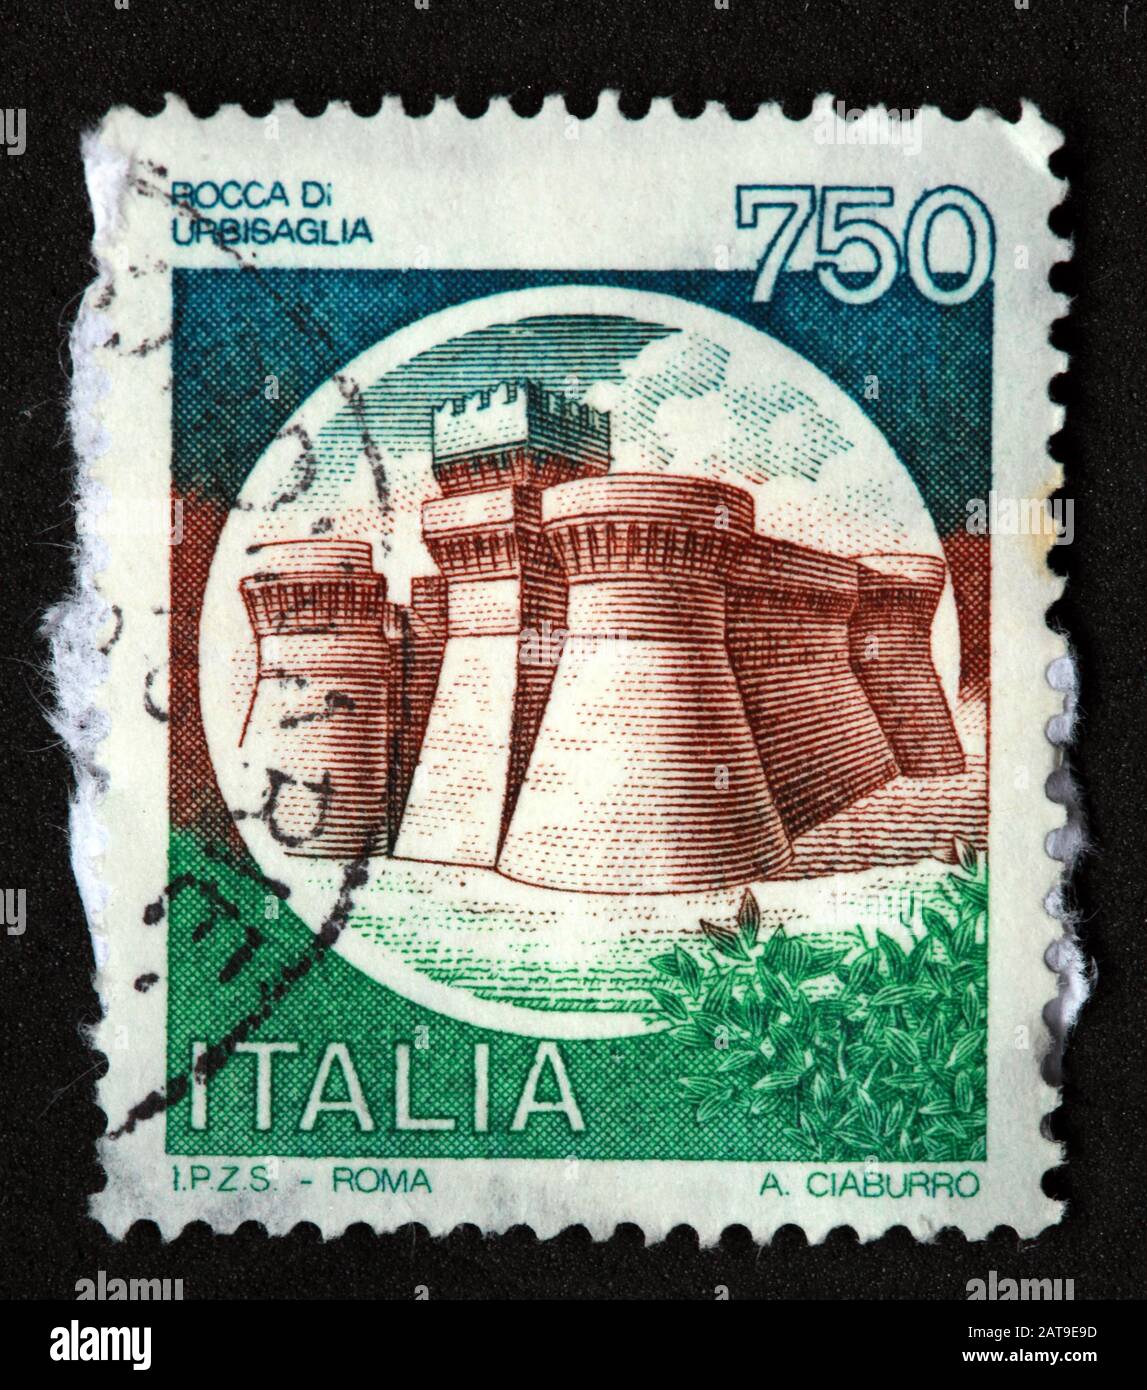 Francobollo italiano, poste Italia usato e affrancato, castelli d'Italia, Italia 750lire bocca di Urbisaglia Roma A.Ciaburro Foto Stock